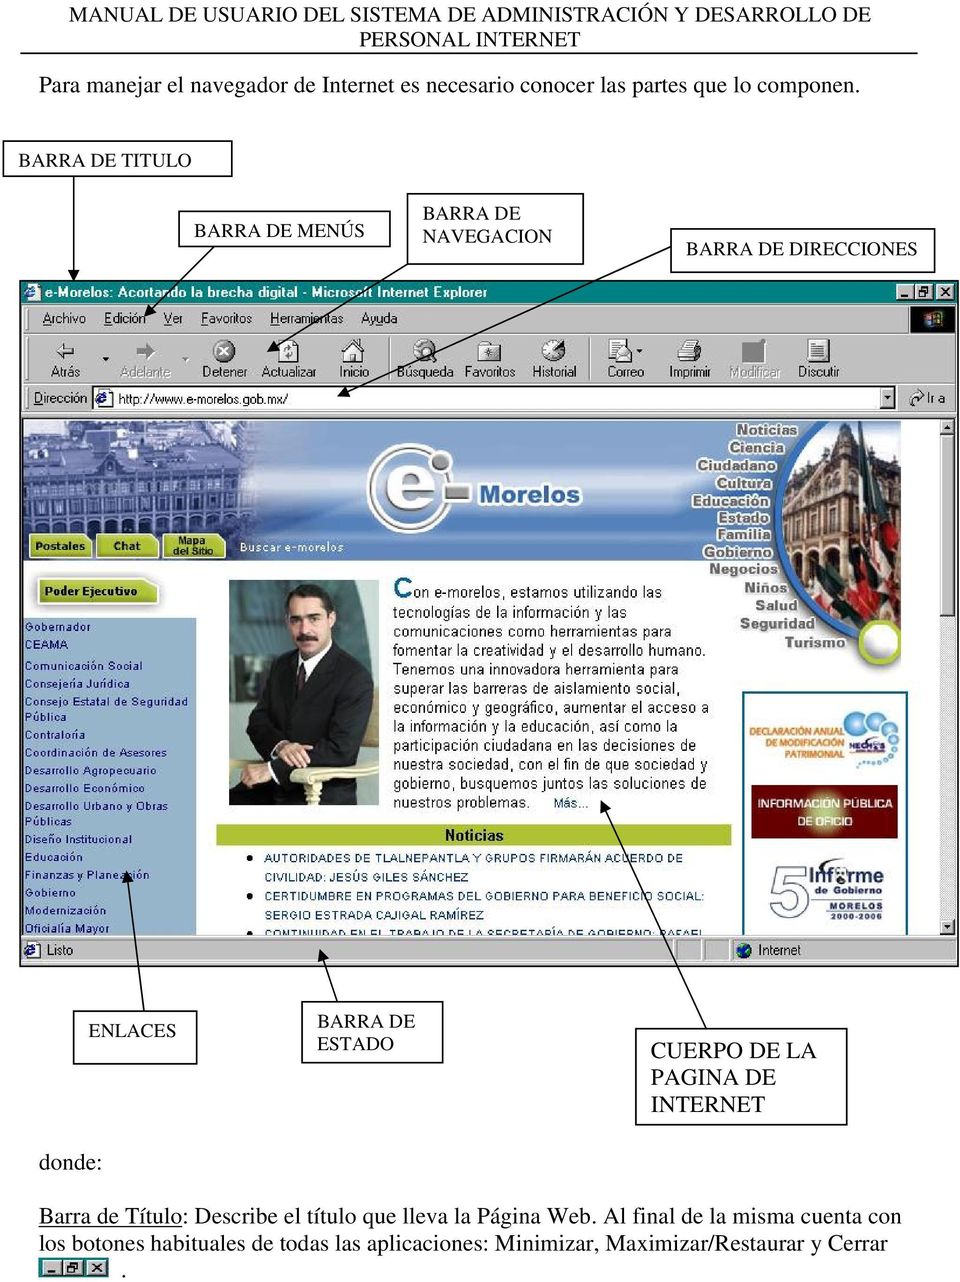 ESTADO CUERPO DE LA PAGINA DE INTERNET Barra de Títul: Describe el títul que lleva la Página Web.